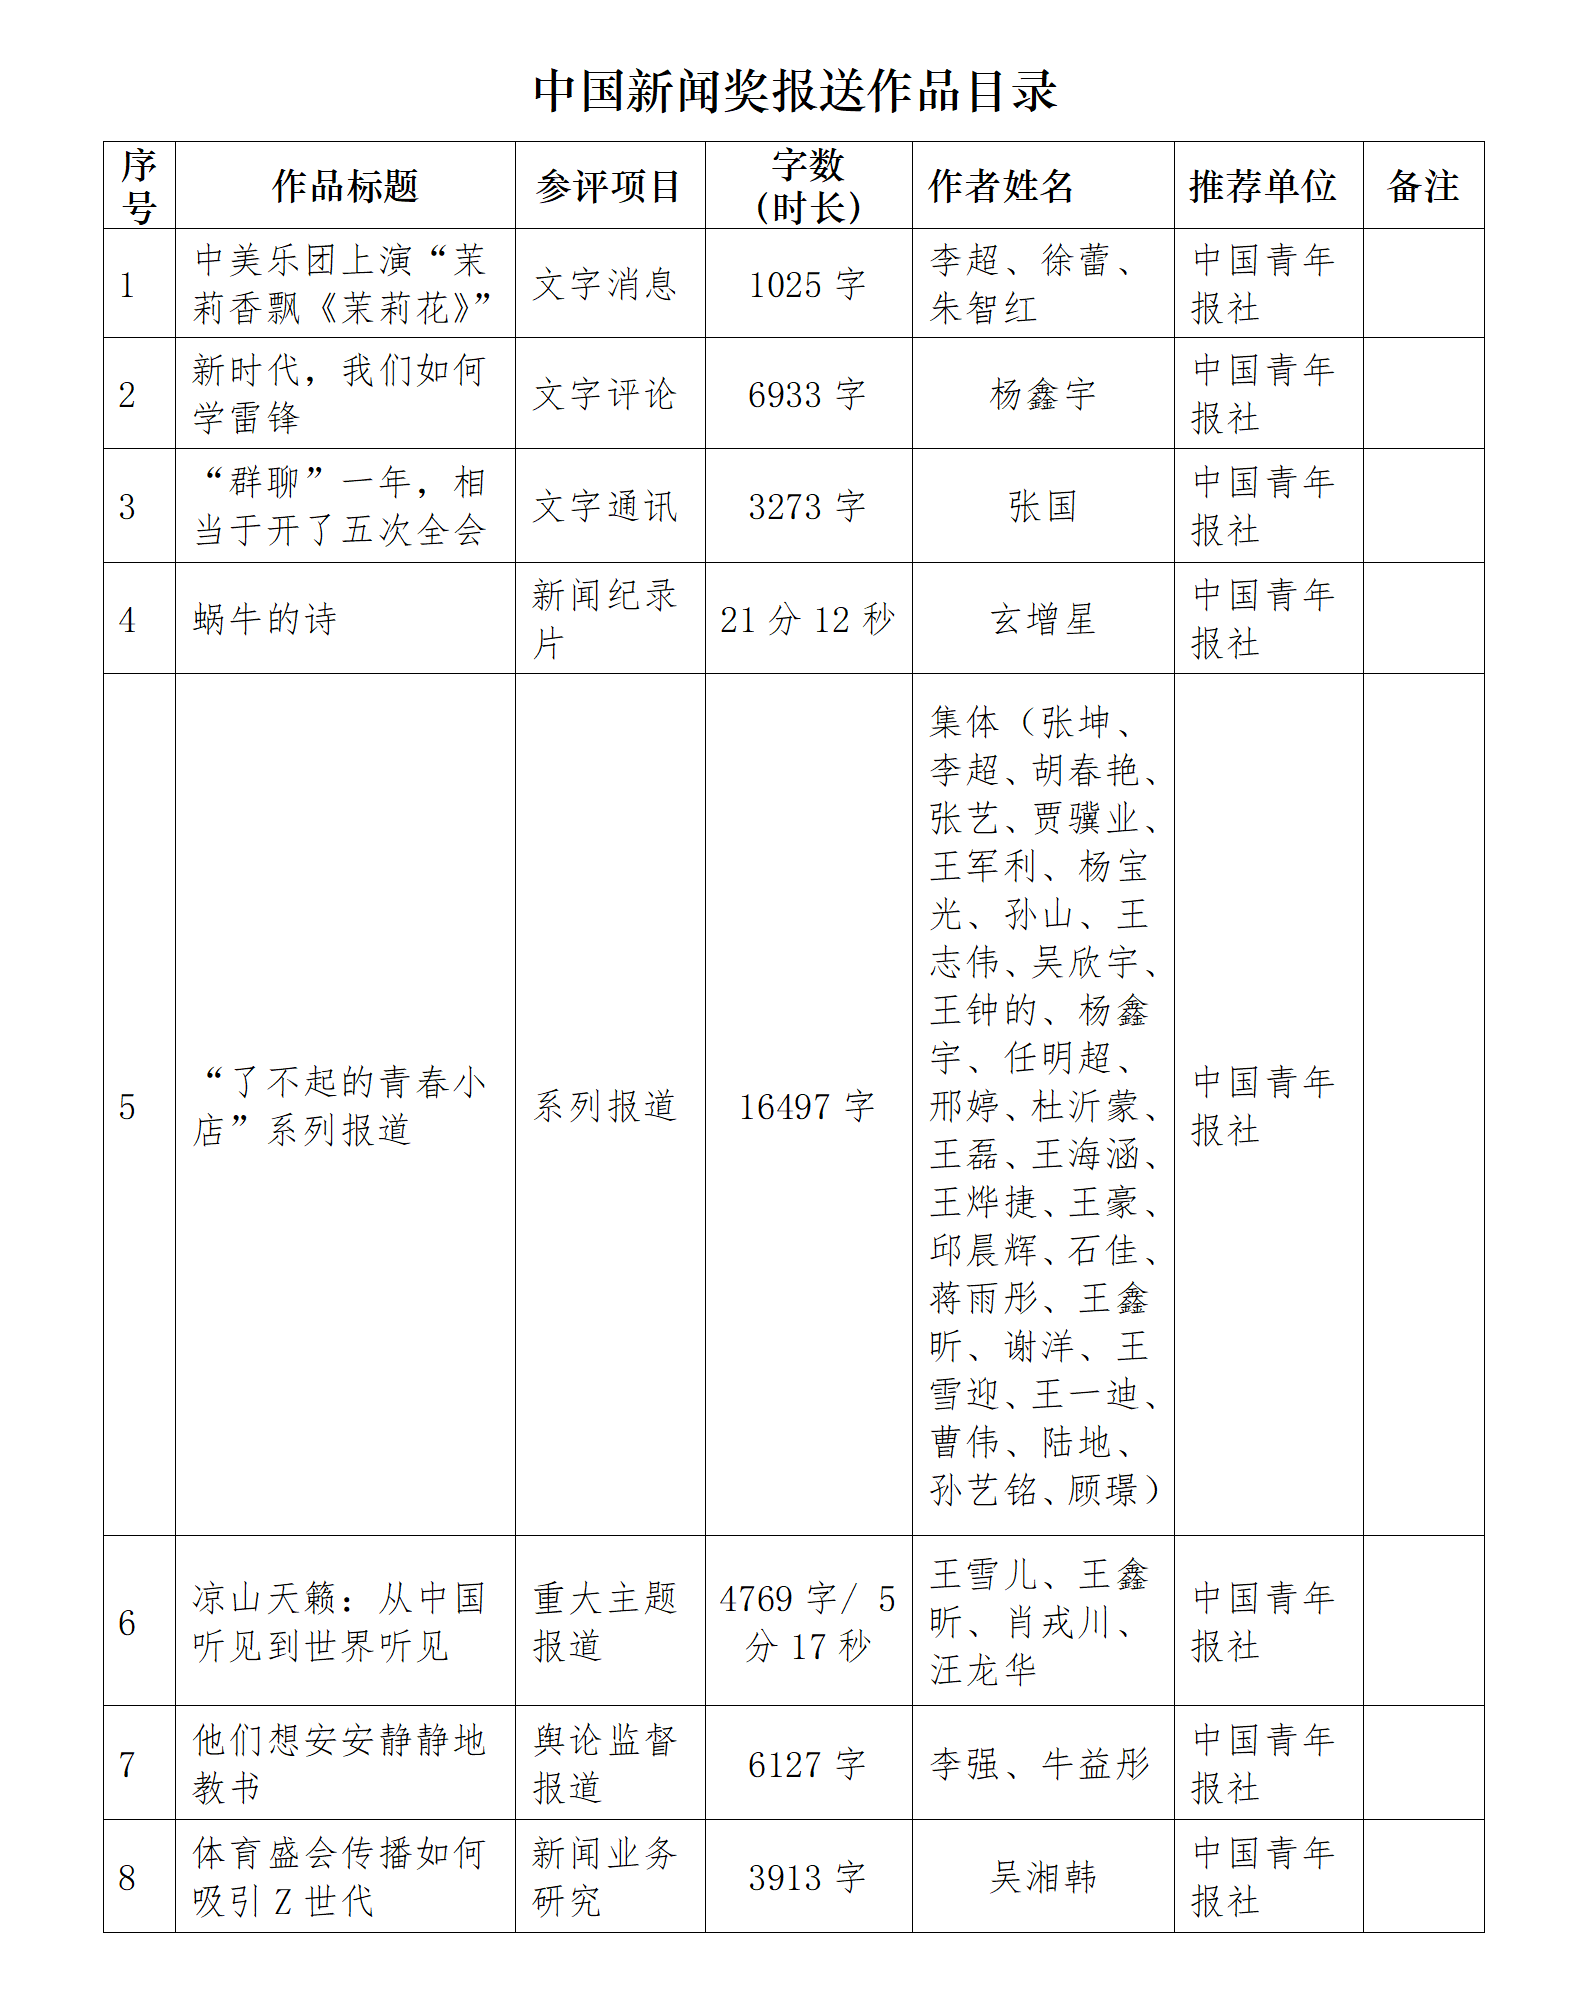 中国青年报社推荐参评 第34届中国新闻奖报送作品公示